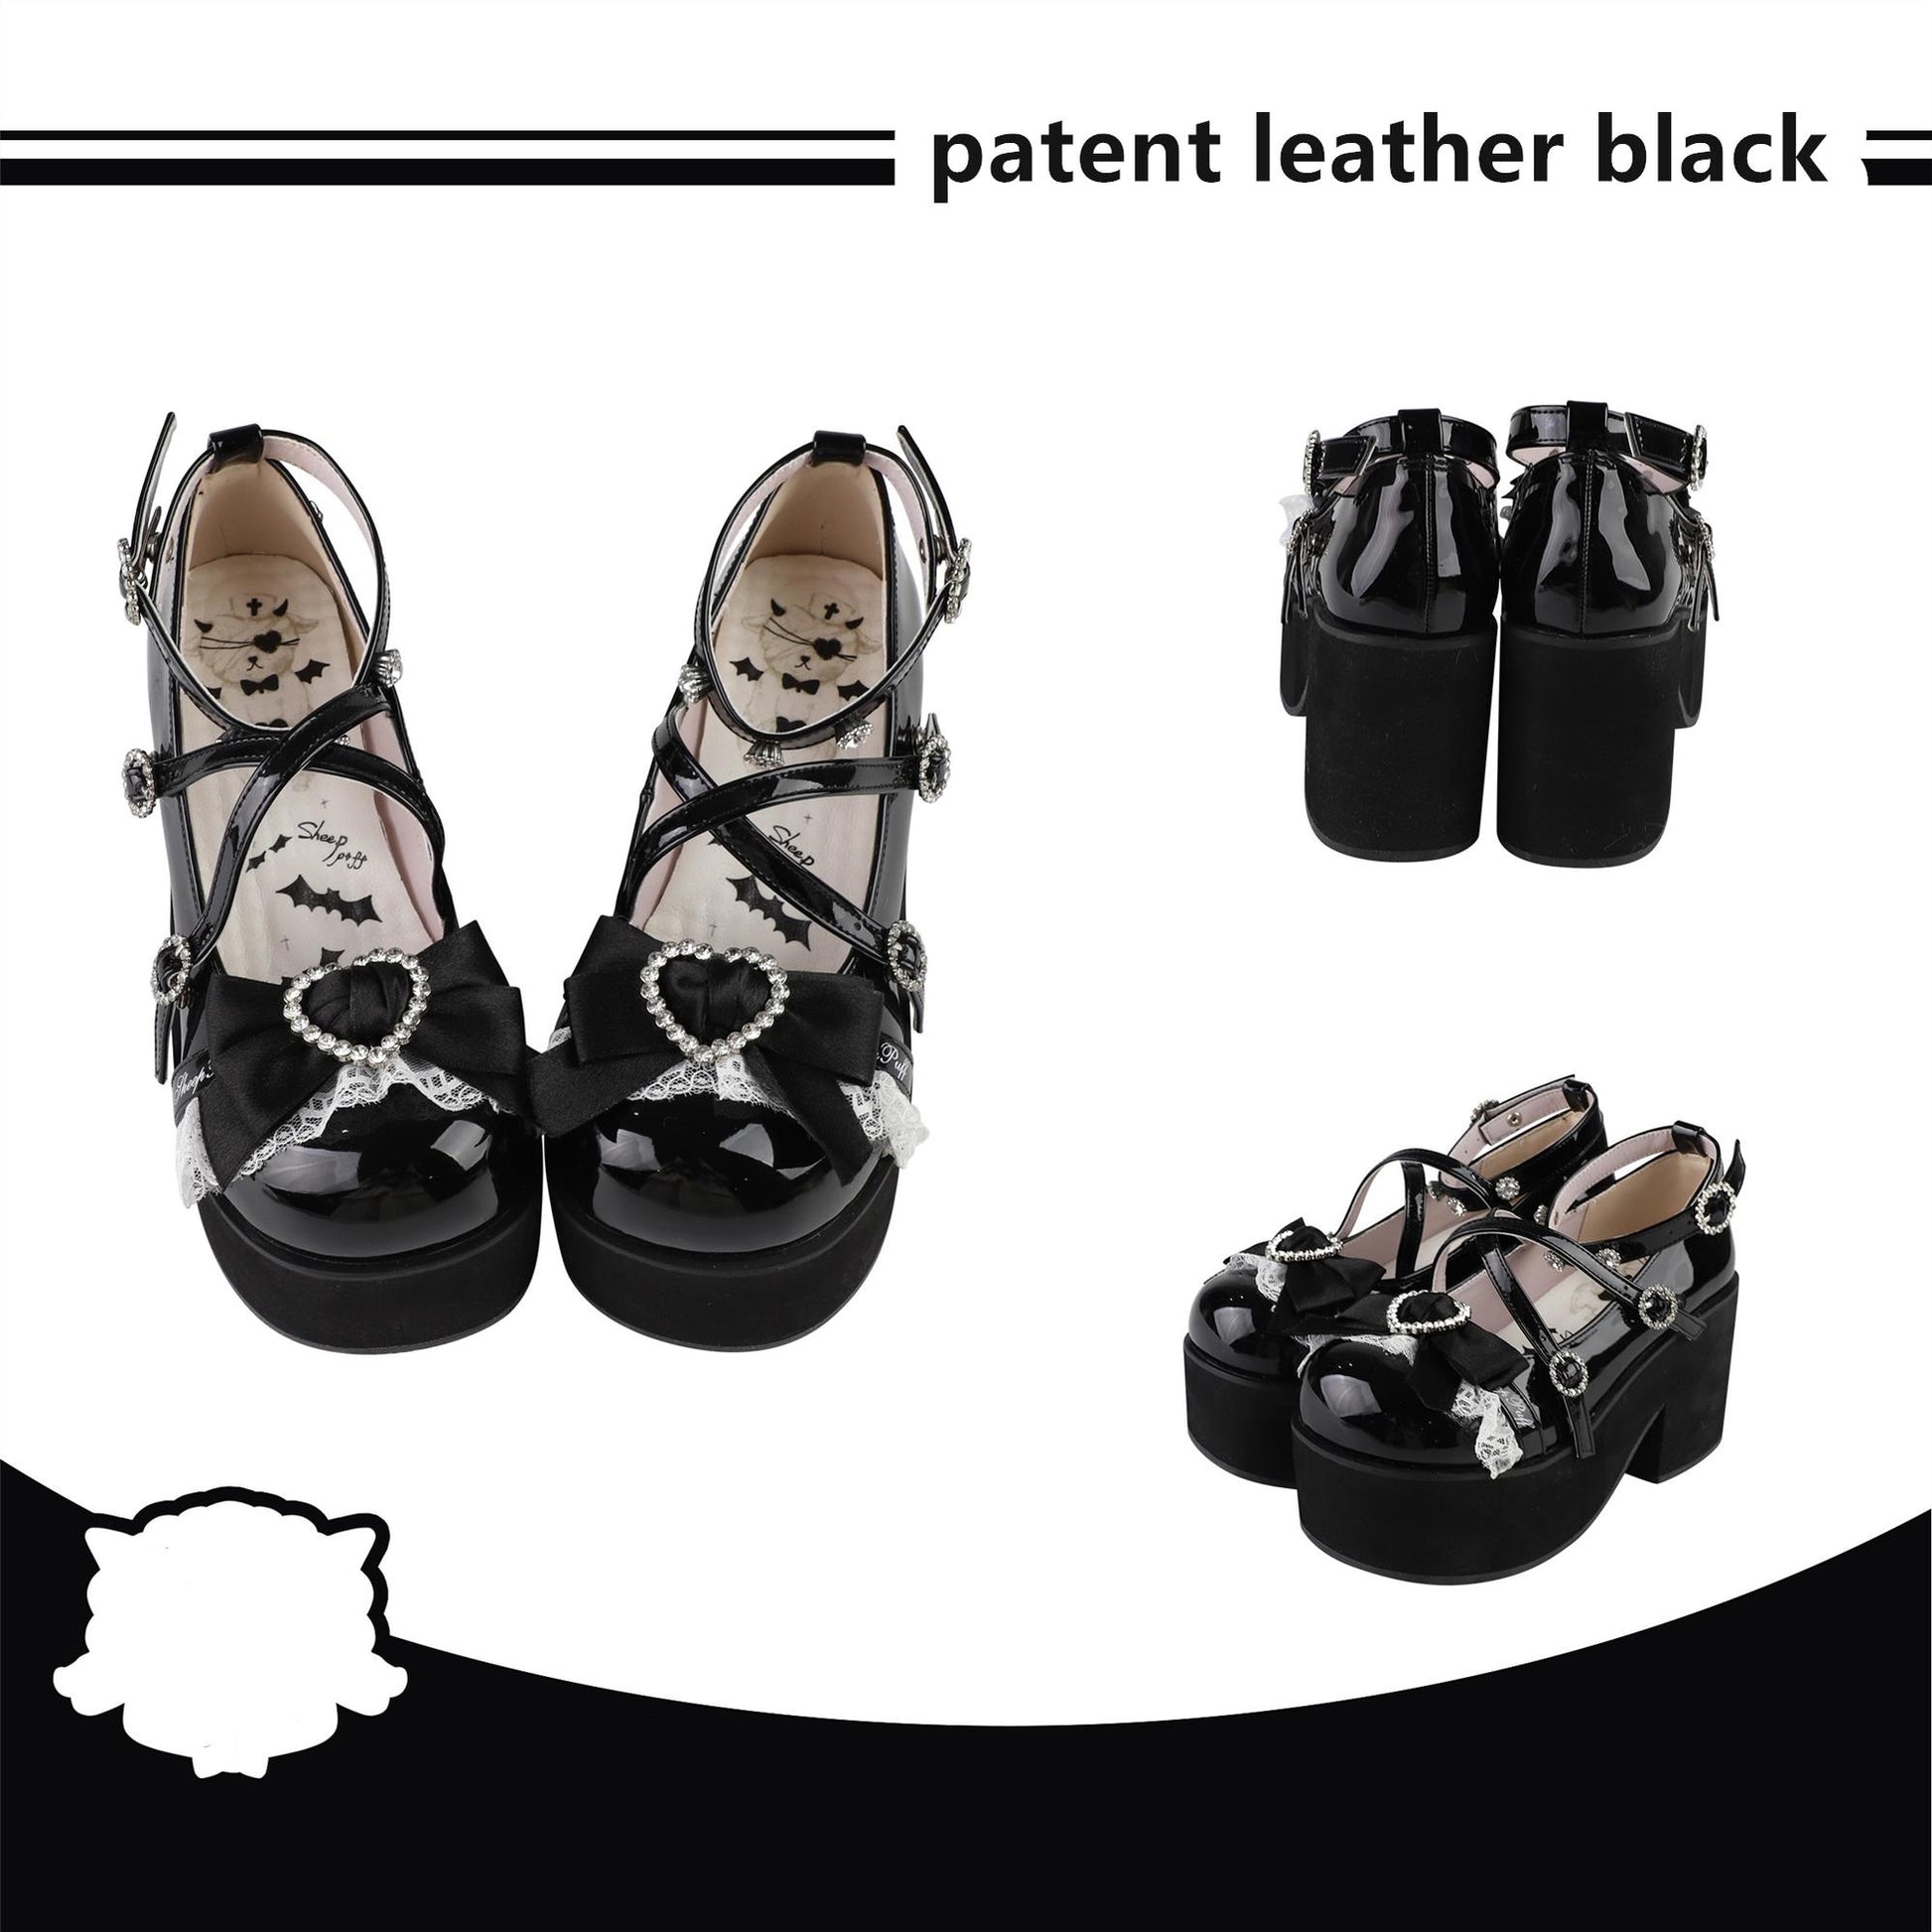 Lolita Platform Shoes Rhinestone Buckles Black Shoes (35 36 37 38 39 40) 37634:574780